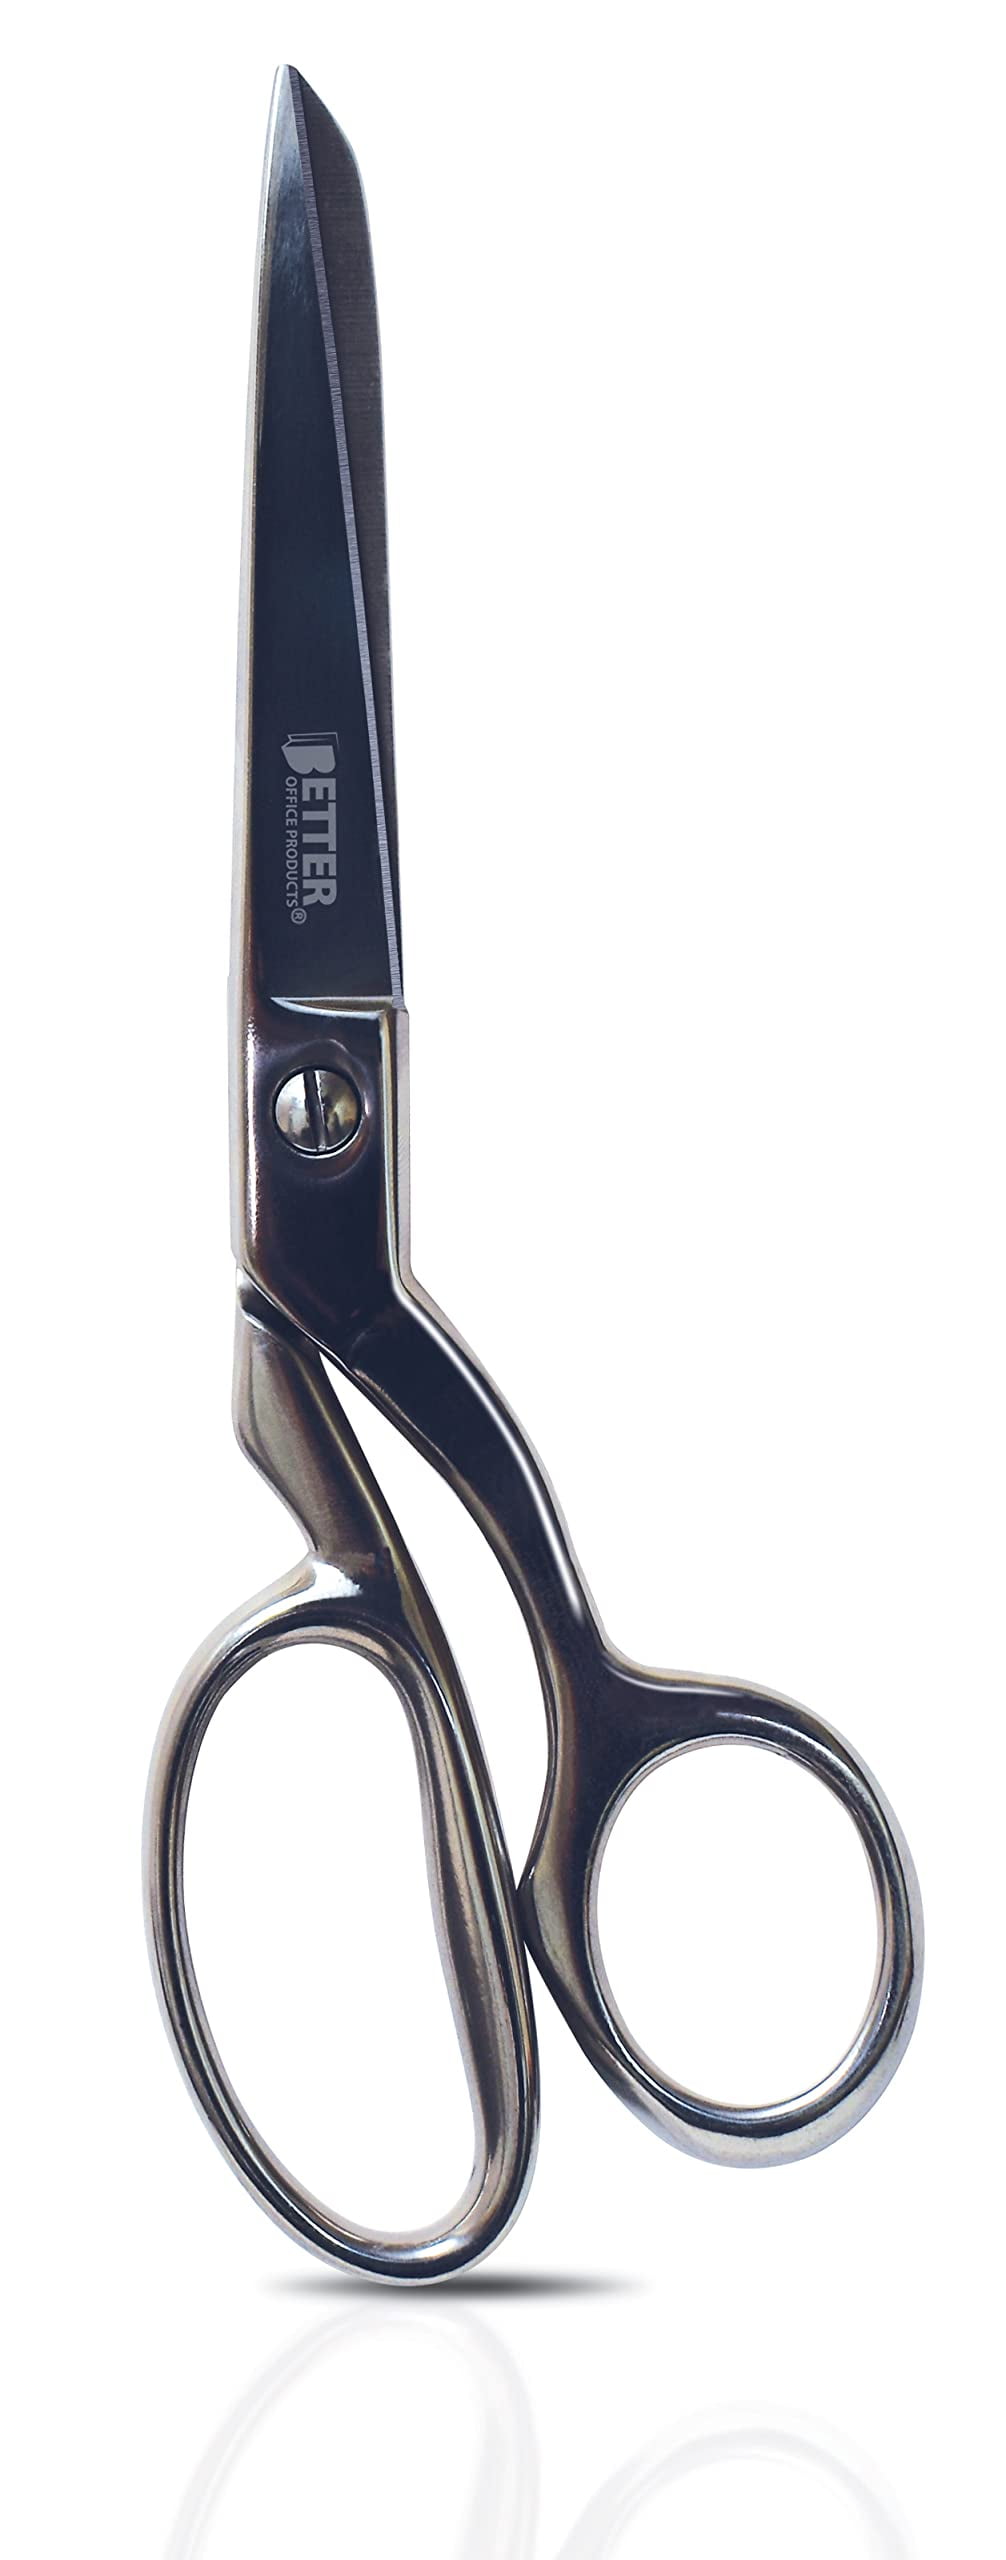 ZekPro Scissors for School - 9 Pack, Premium Stainless Steel